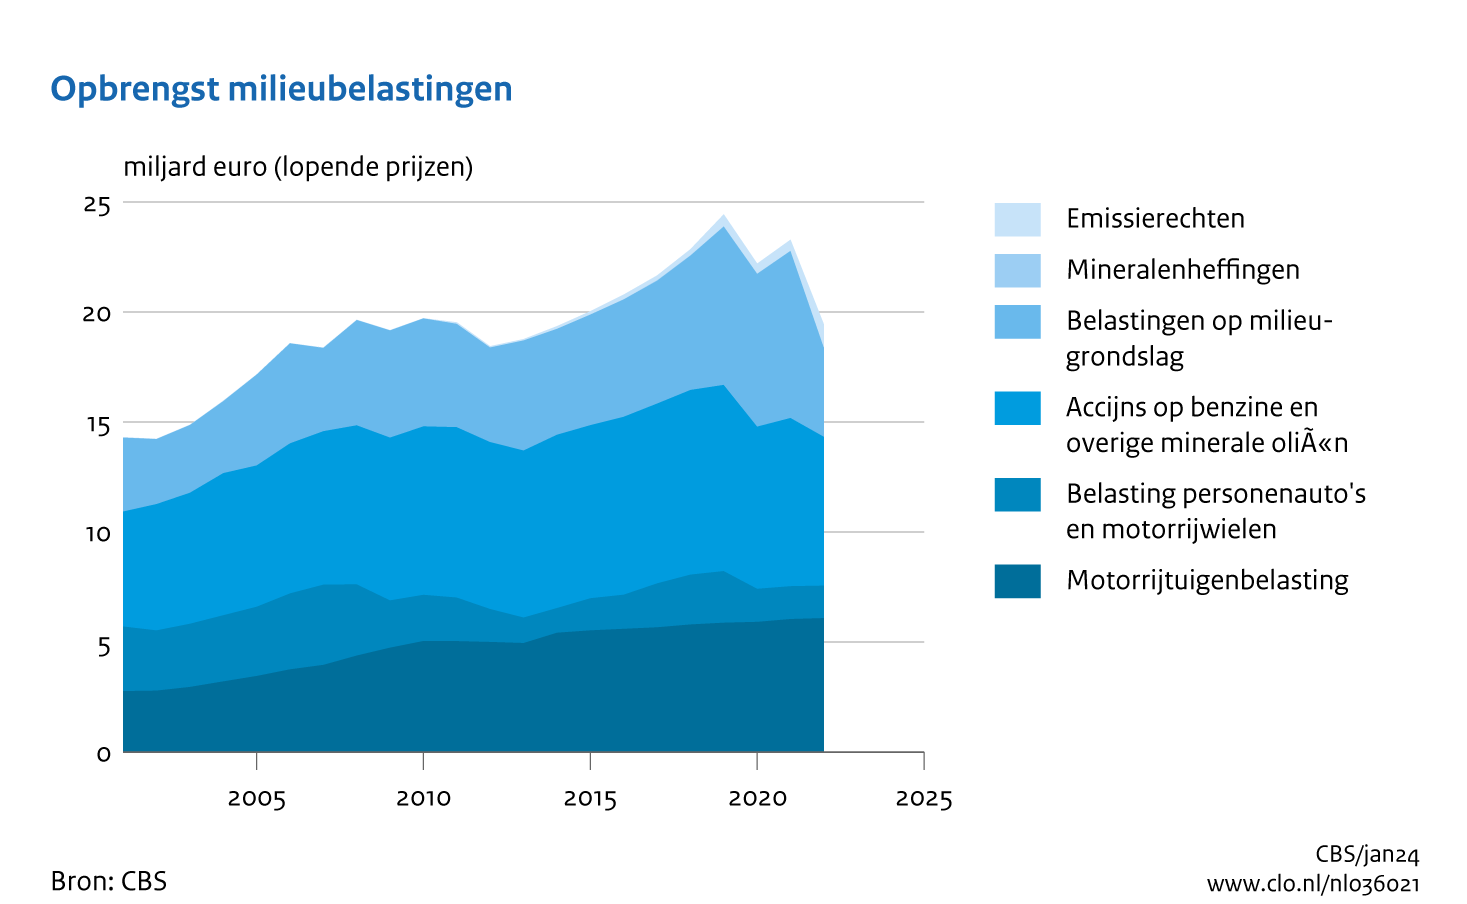 In 2022 bedroeg de totale opbrengst van milieubelastingen en emissierechten bedraagt 19 miljard euro. De opbrengst is met 16% gedaald ten opzichte van 2021 door vooral minder opbrengsten van belastingen op een milieugrondslag.